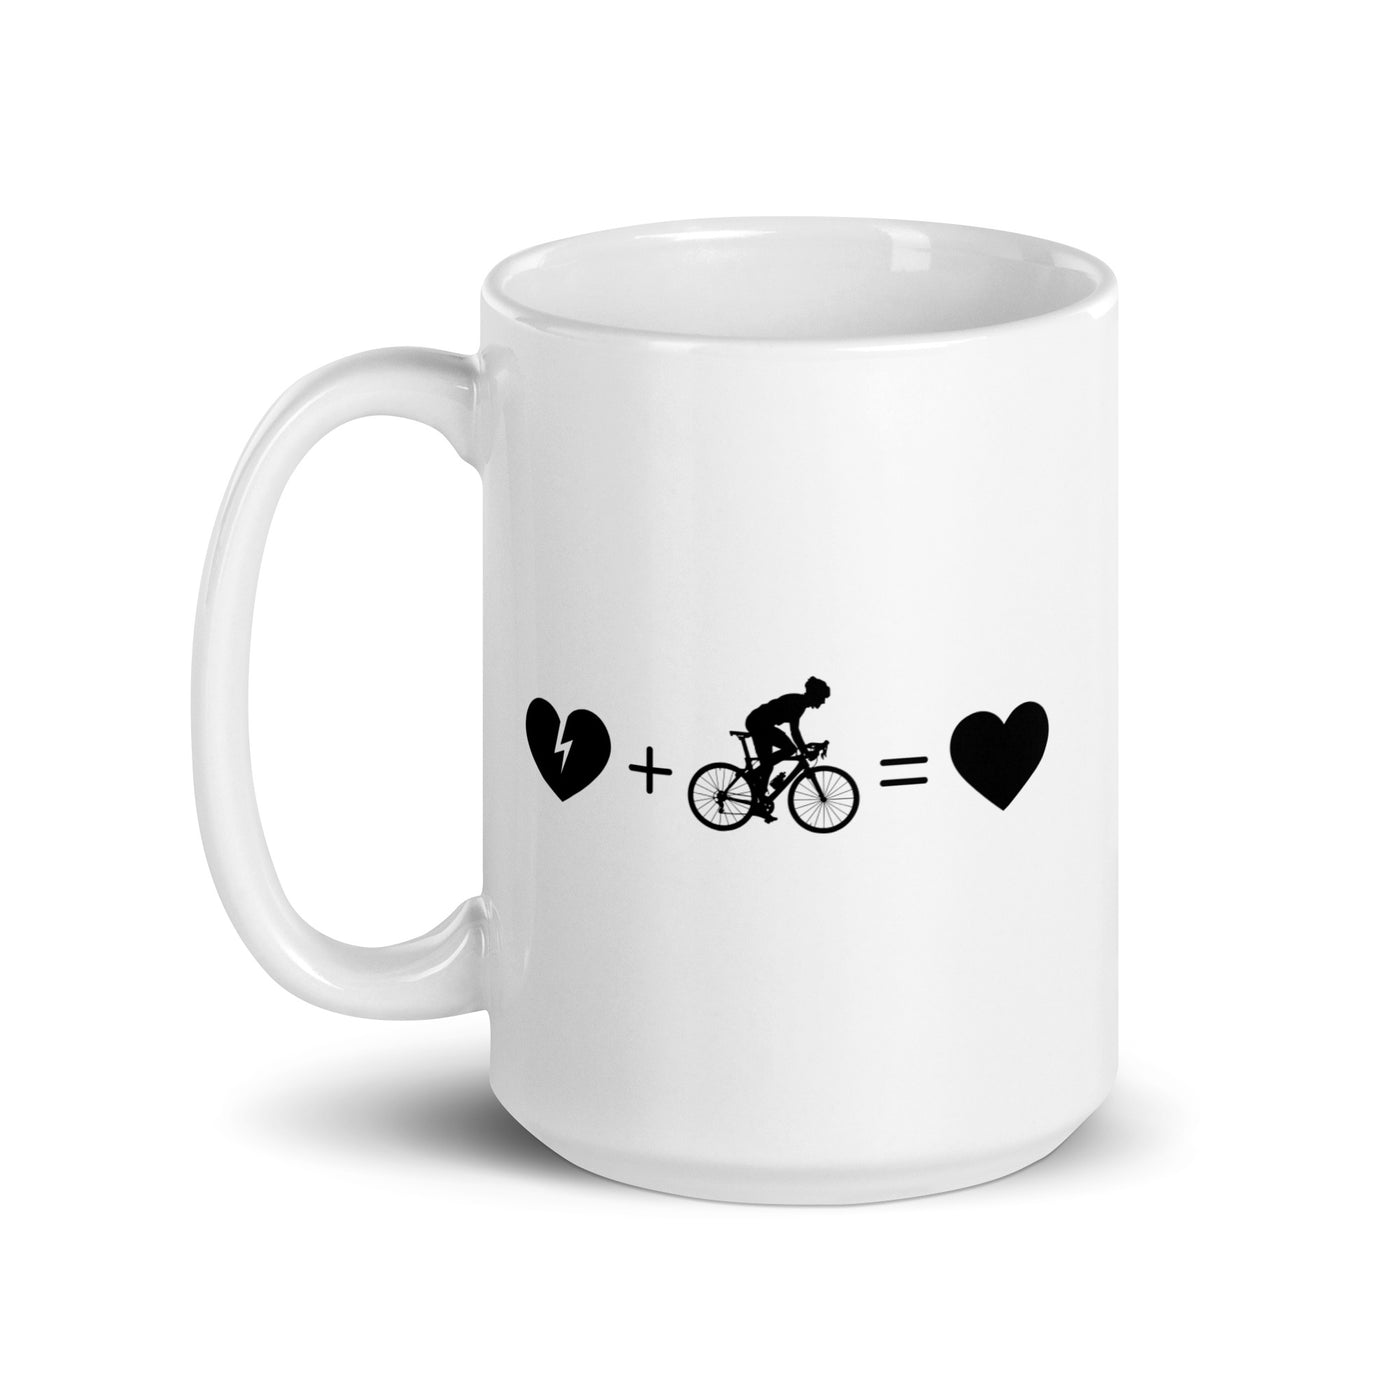 Broken Heart Heart And Cycling 1 - Tasse fahrrad